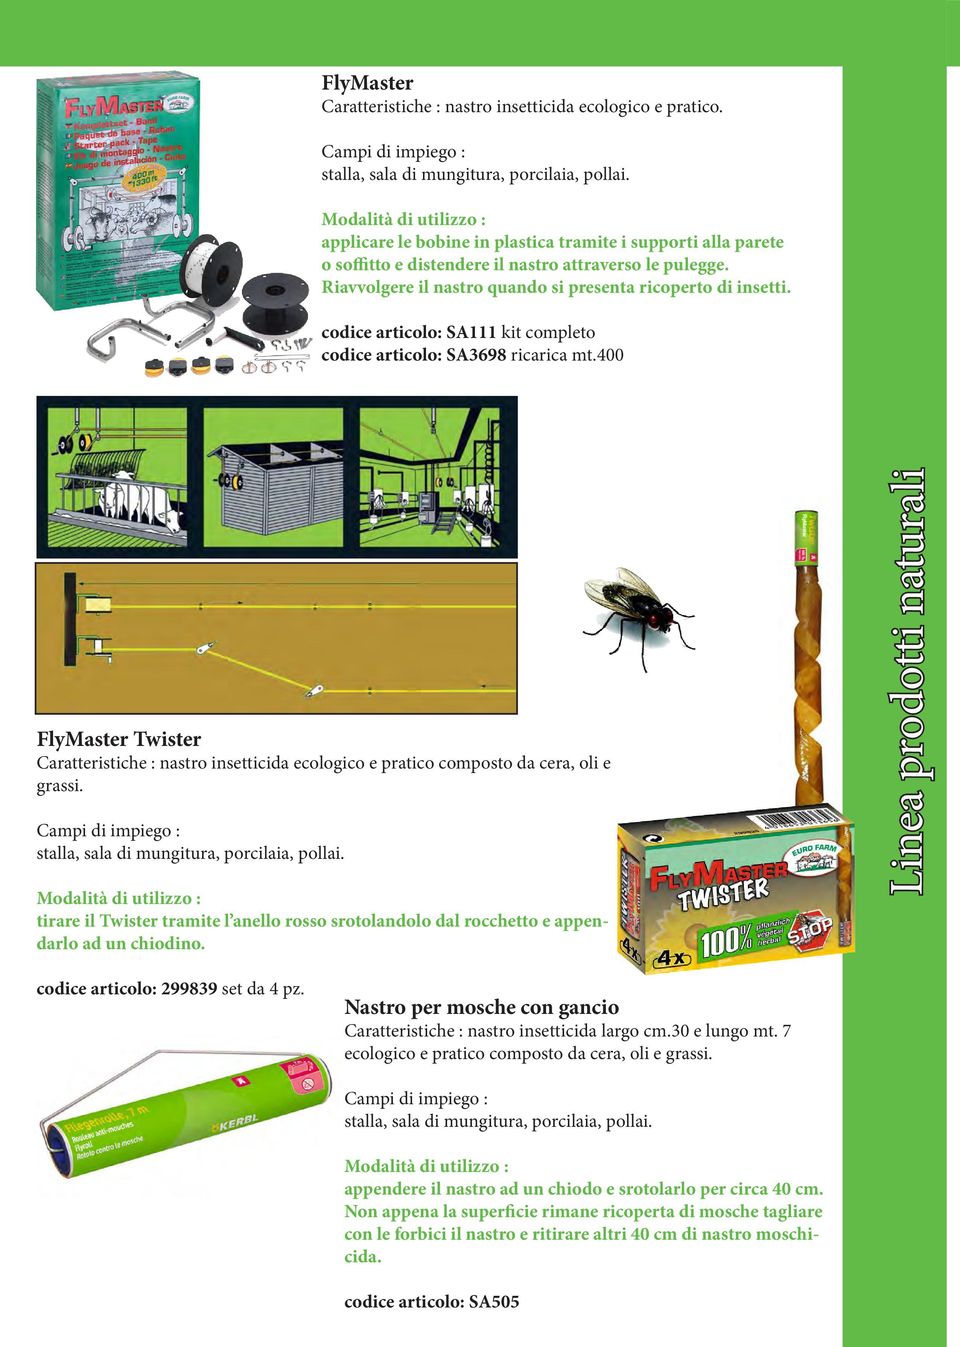 codice articolo: SA111 kit completo codice articolo: SA3698 ricarica mt.400 FlyMaster Twister : nastro insetticida ecologico e pratico composto da cera, oli e grassi.